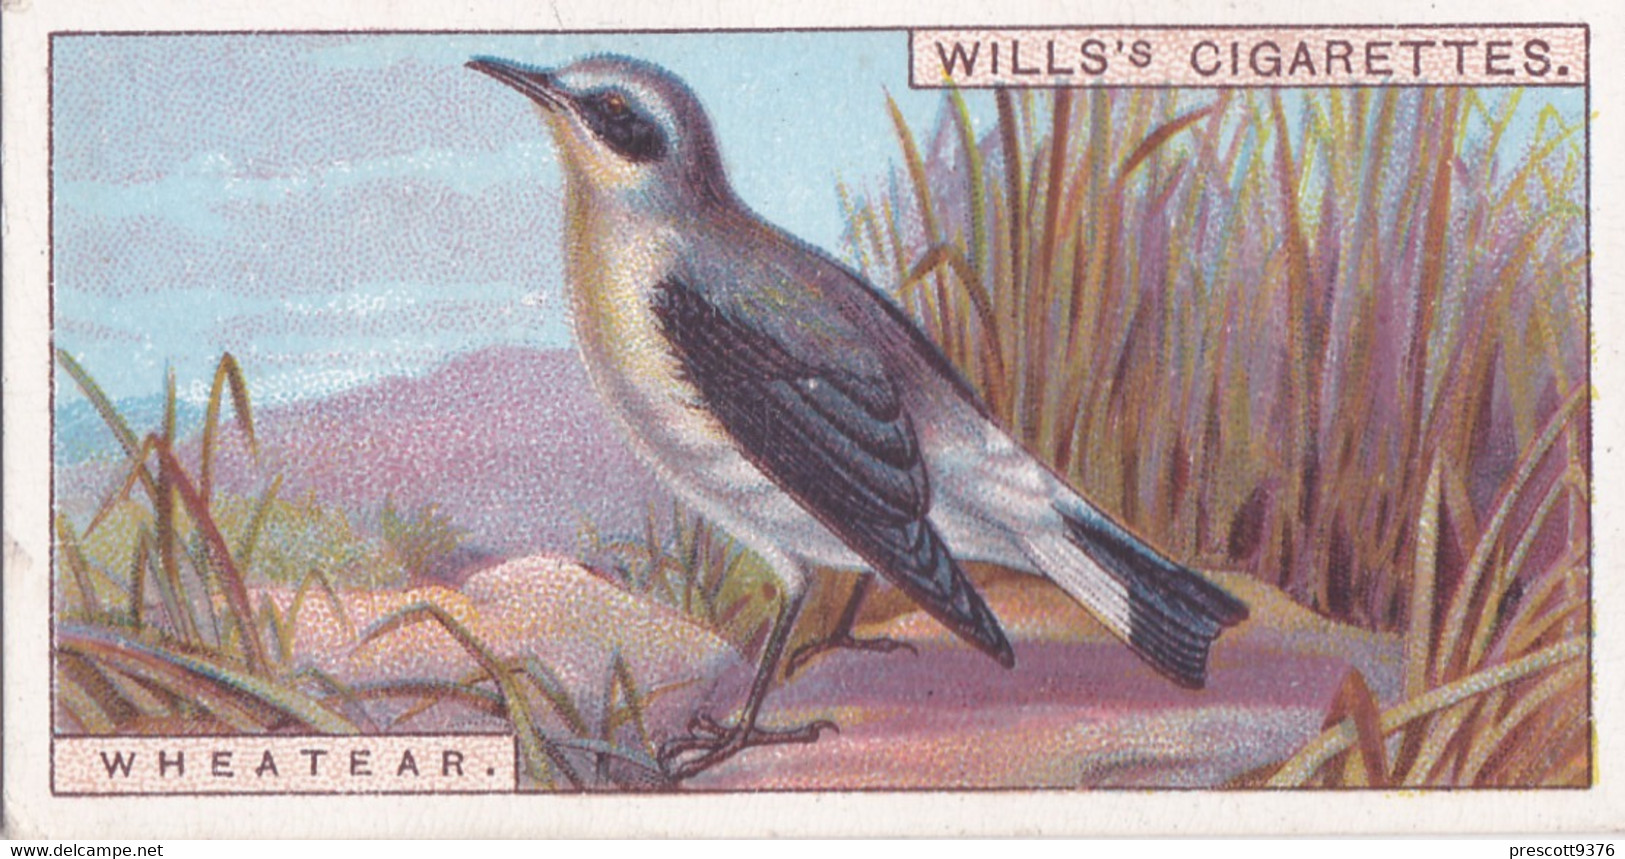 Wheatear -   British Birds 1915 - Wills Cigarette Card - Antique - Wildlife - Wills